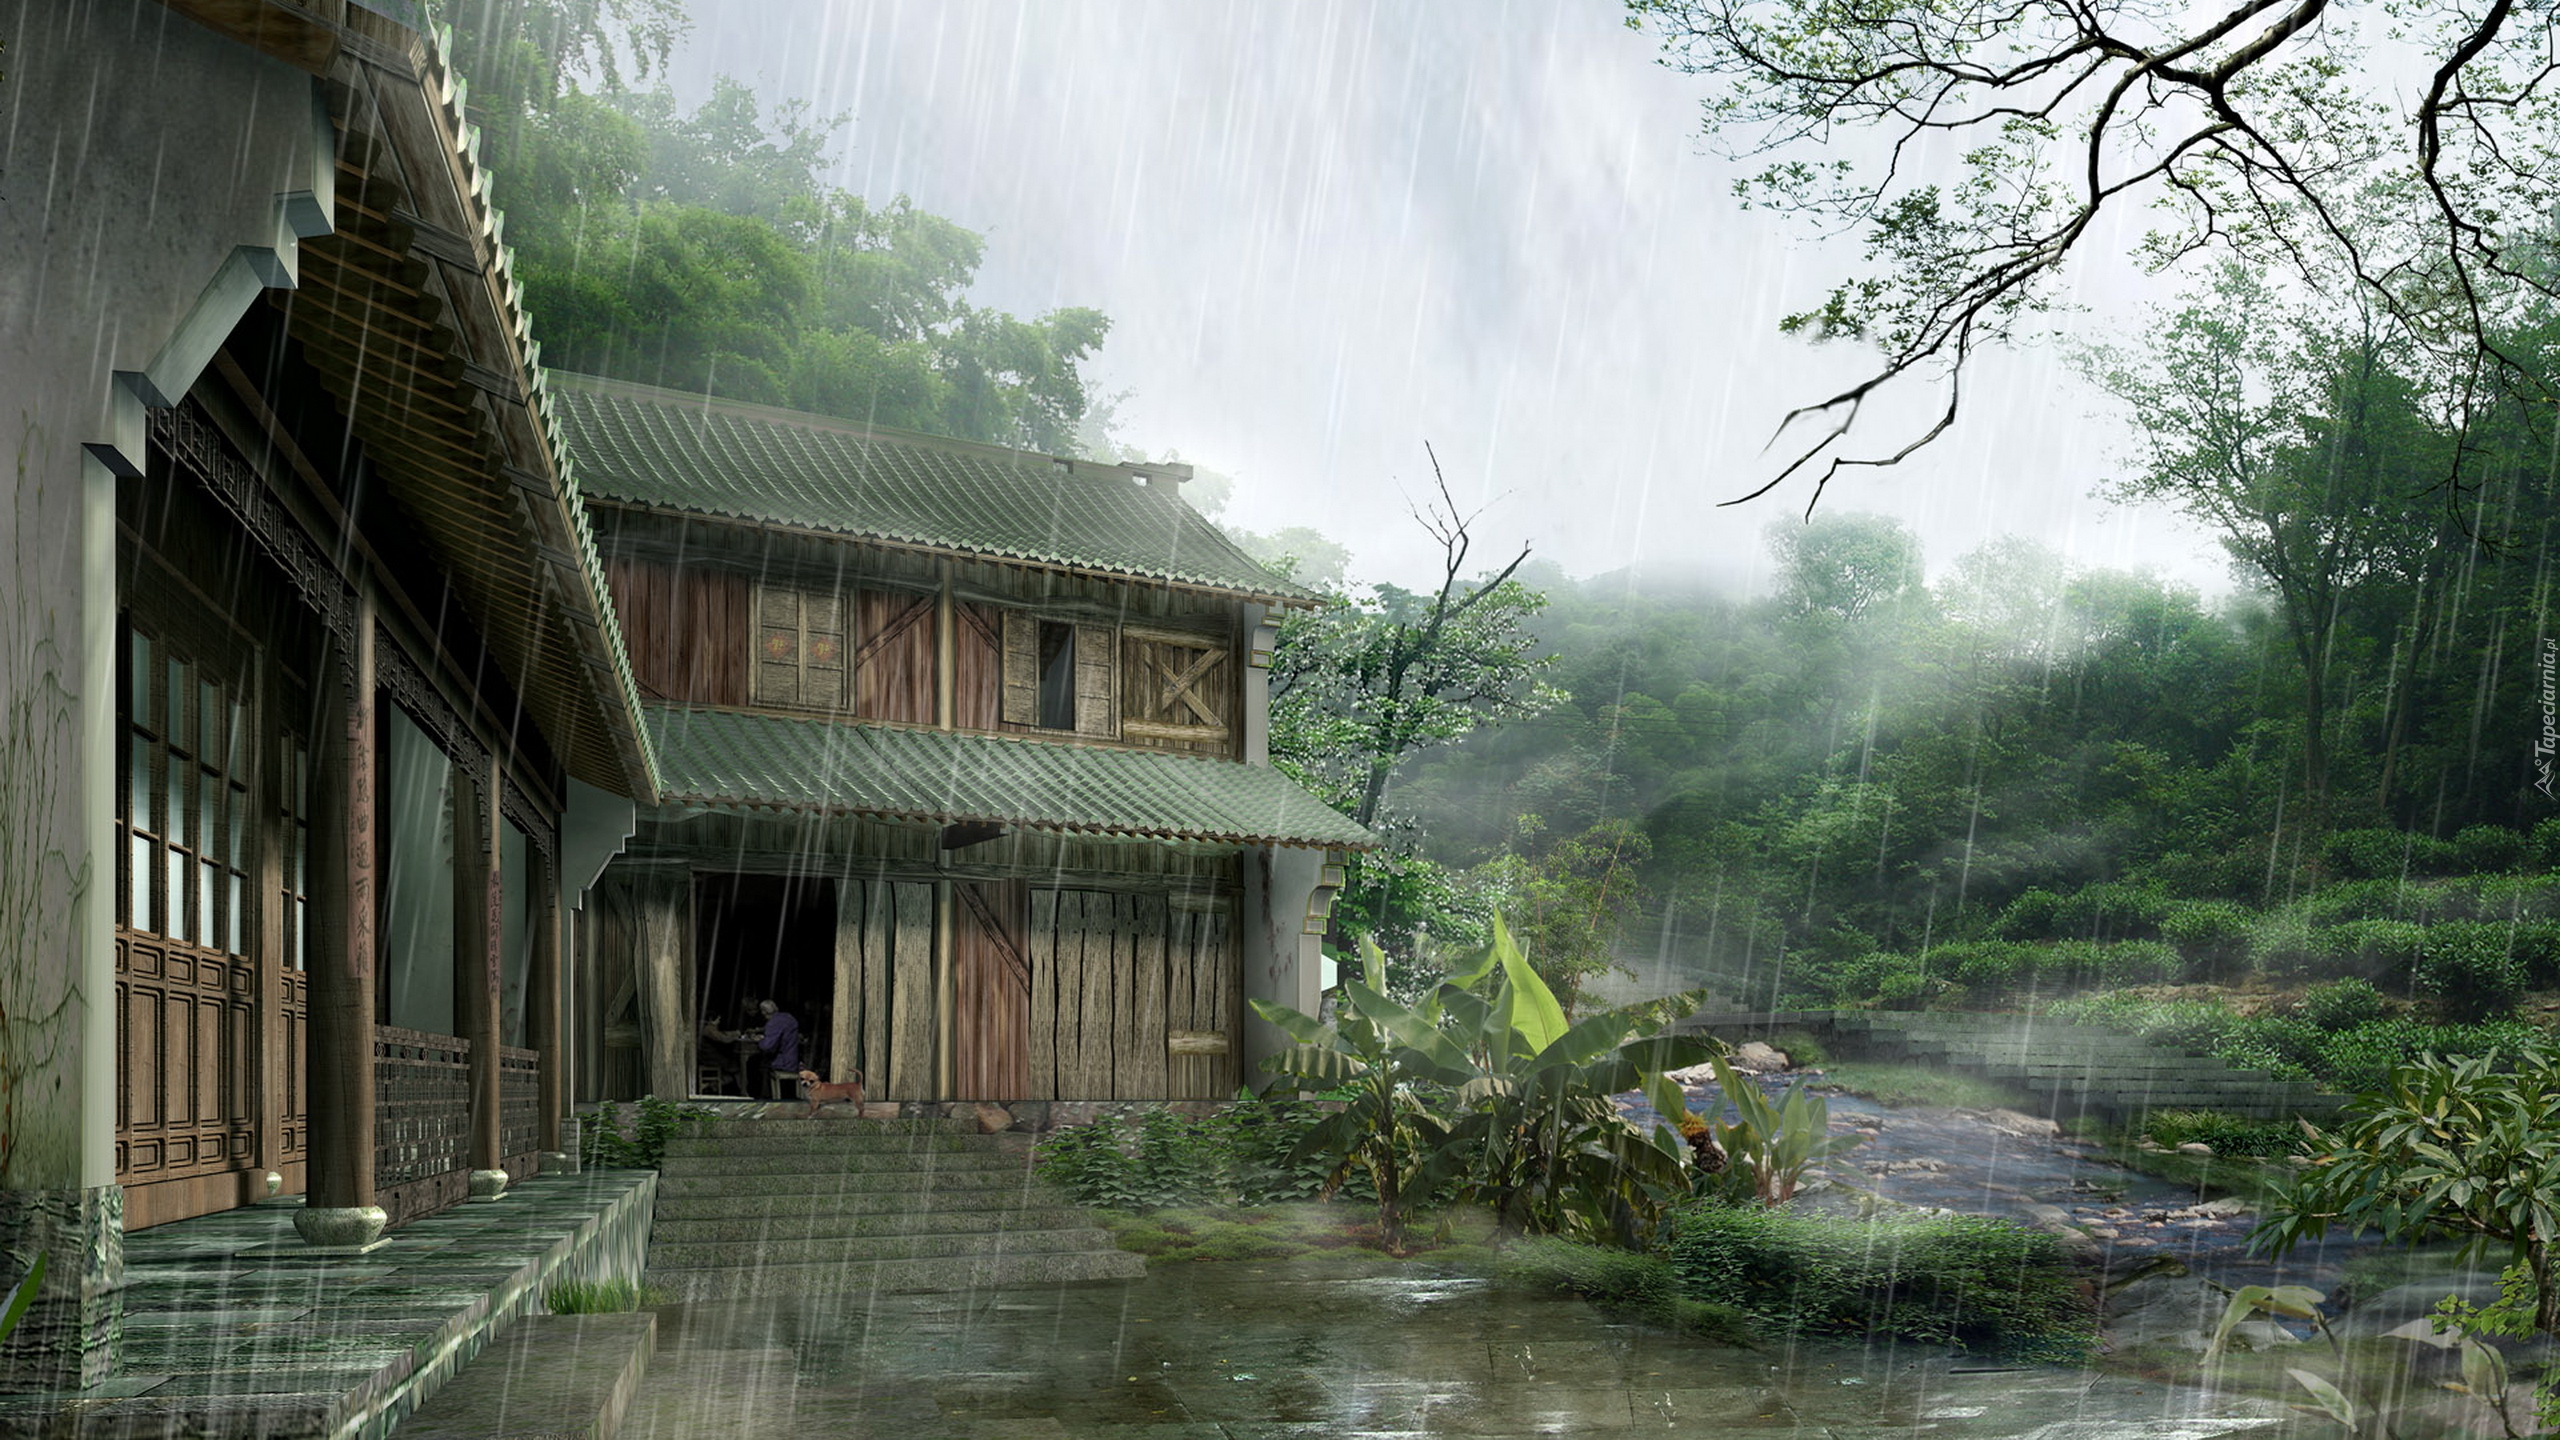 Dom, Drzewa, Deszcz